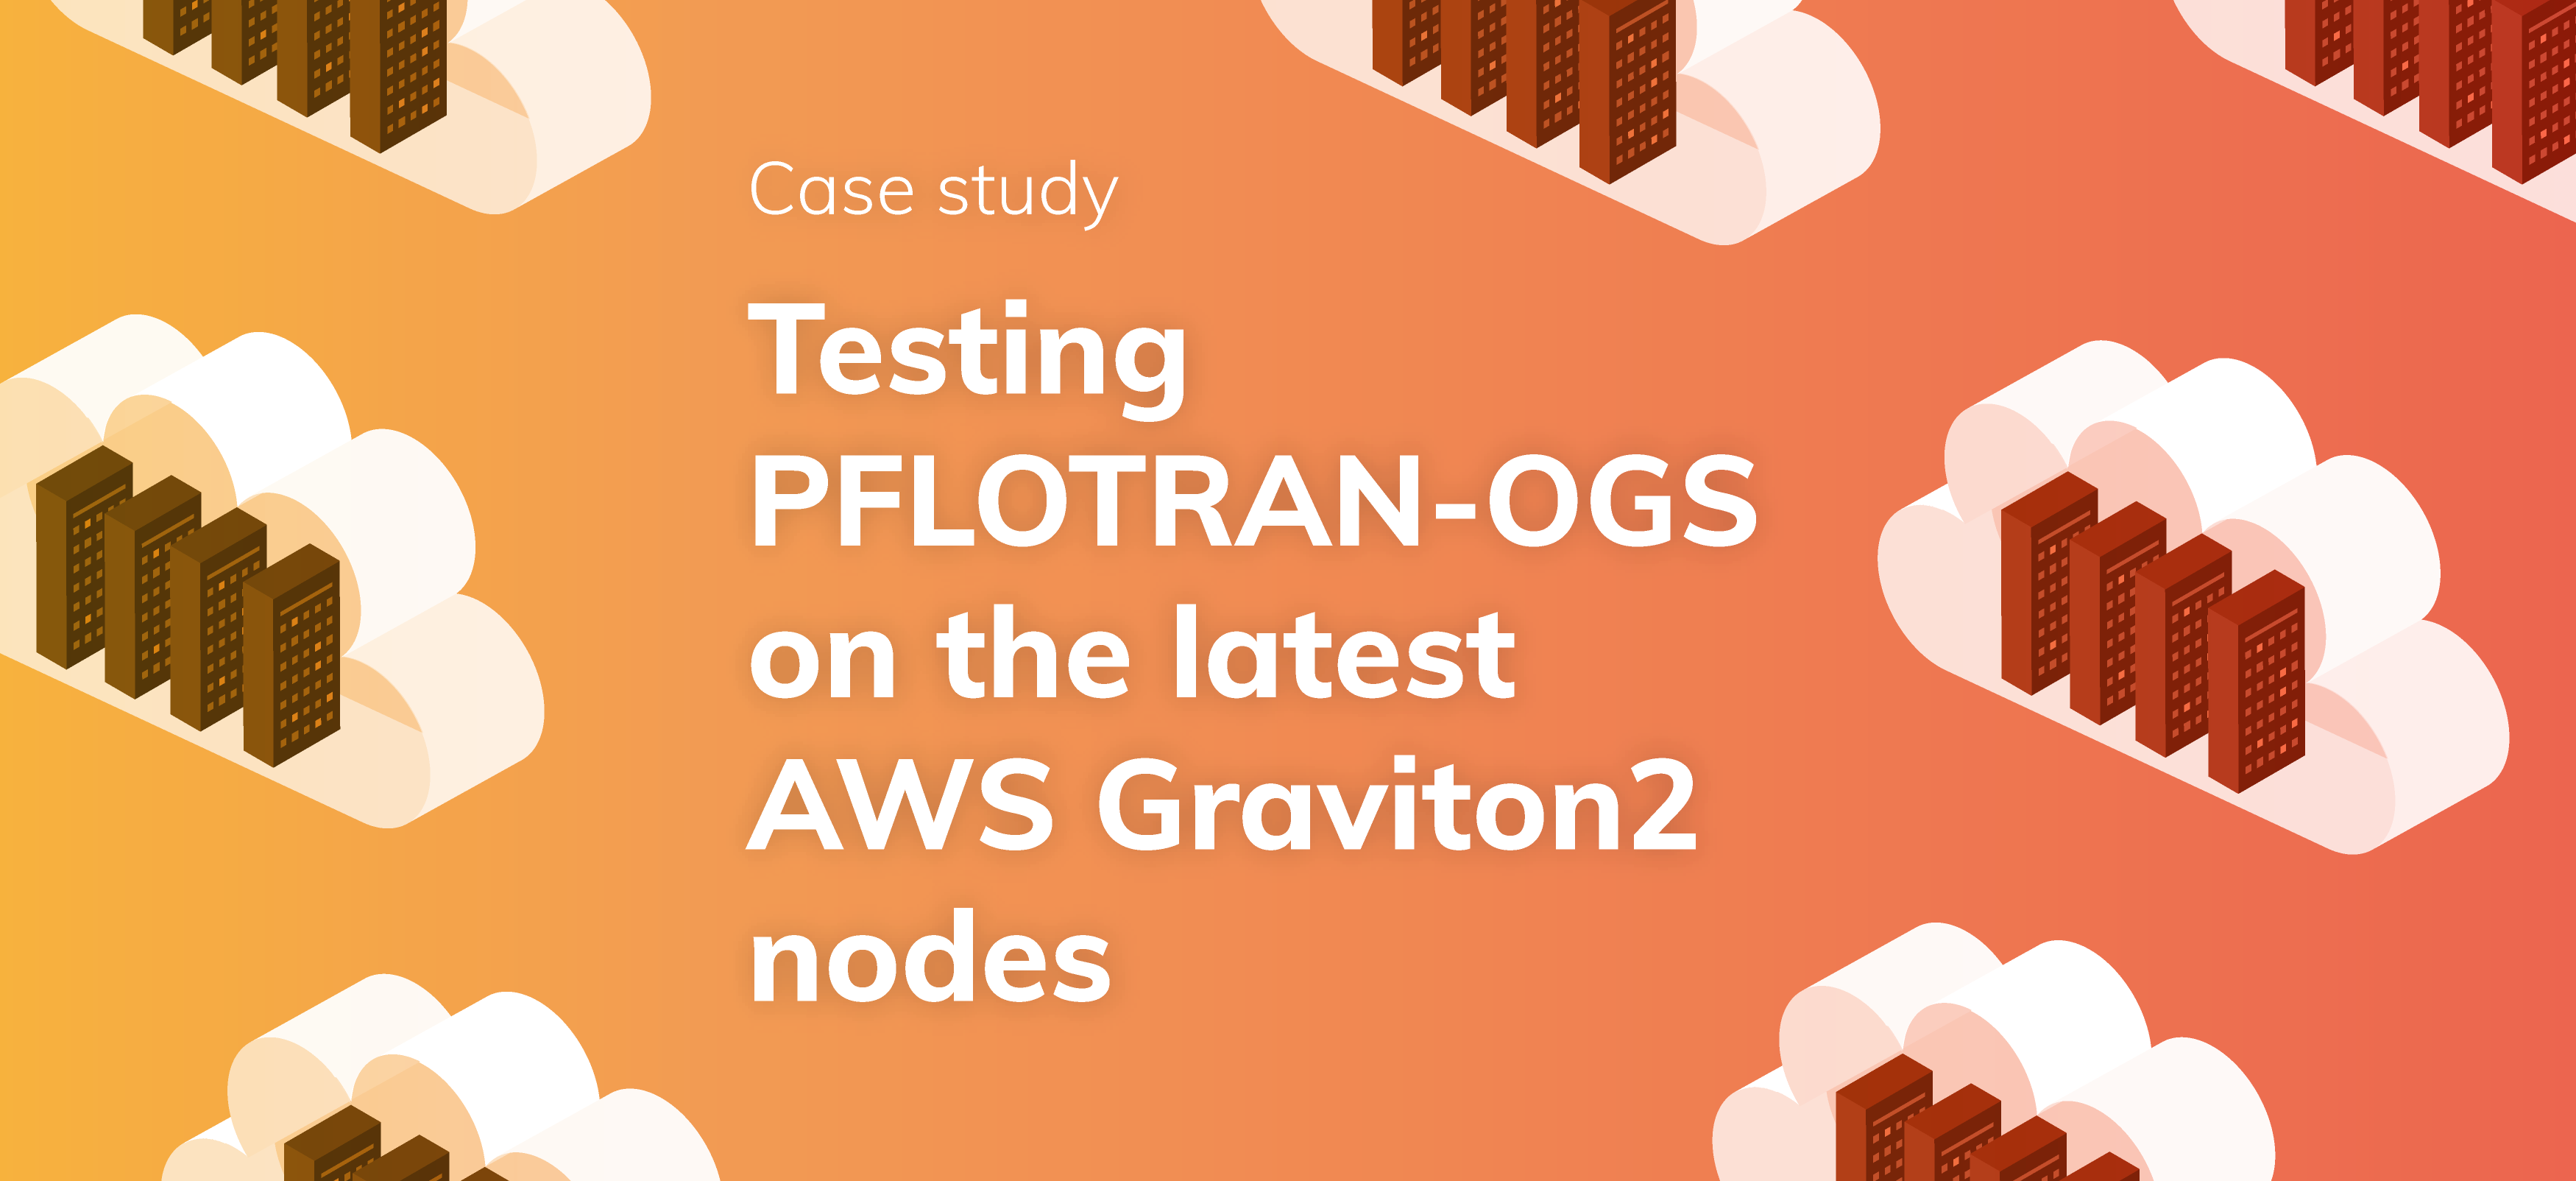 Testing PFLOTRAN-OGS on the latest AWS Graviton2 nodes